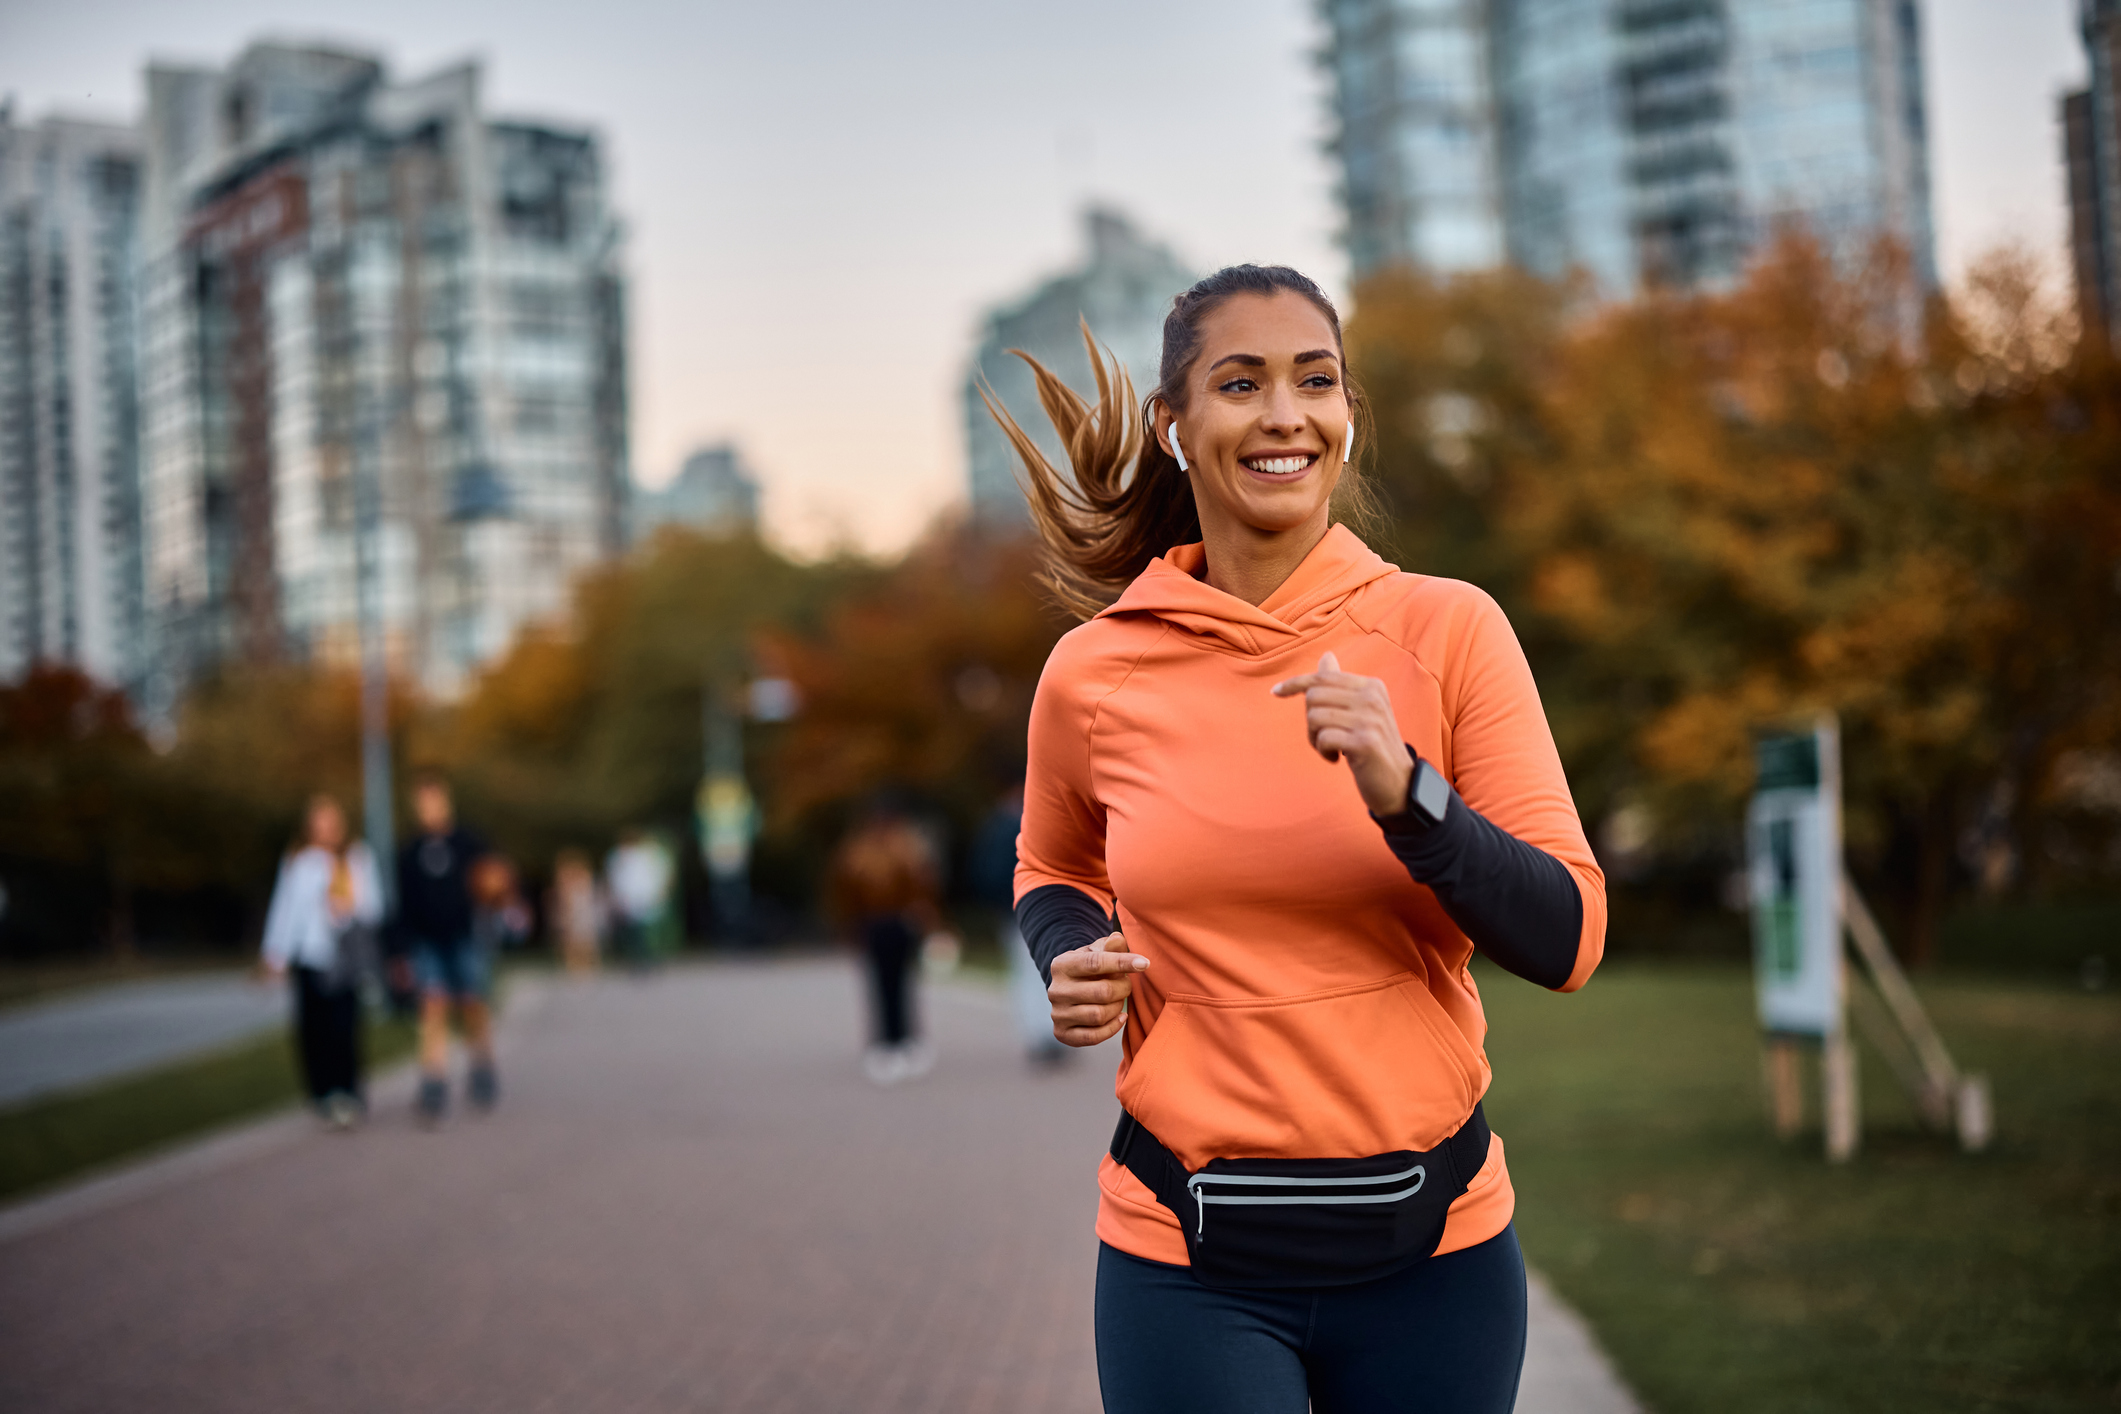 Επτά λόγοι που το τρέξιμο κάνει καλό στην υγεία